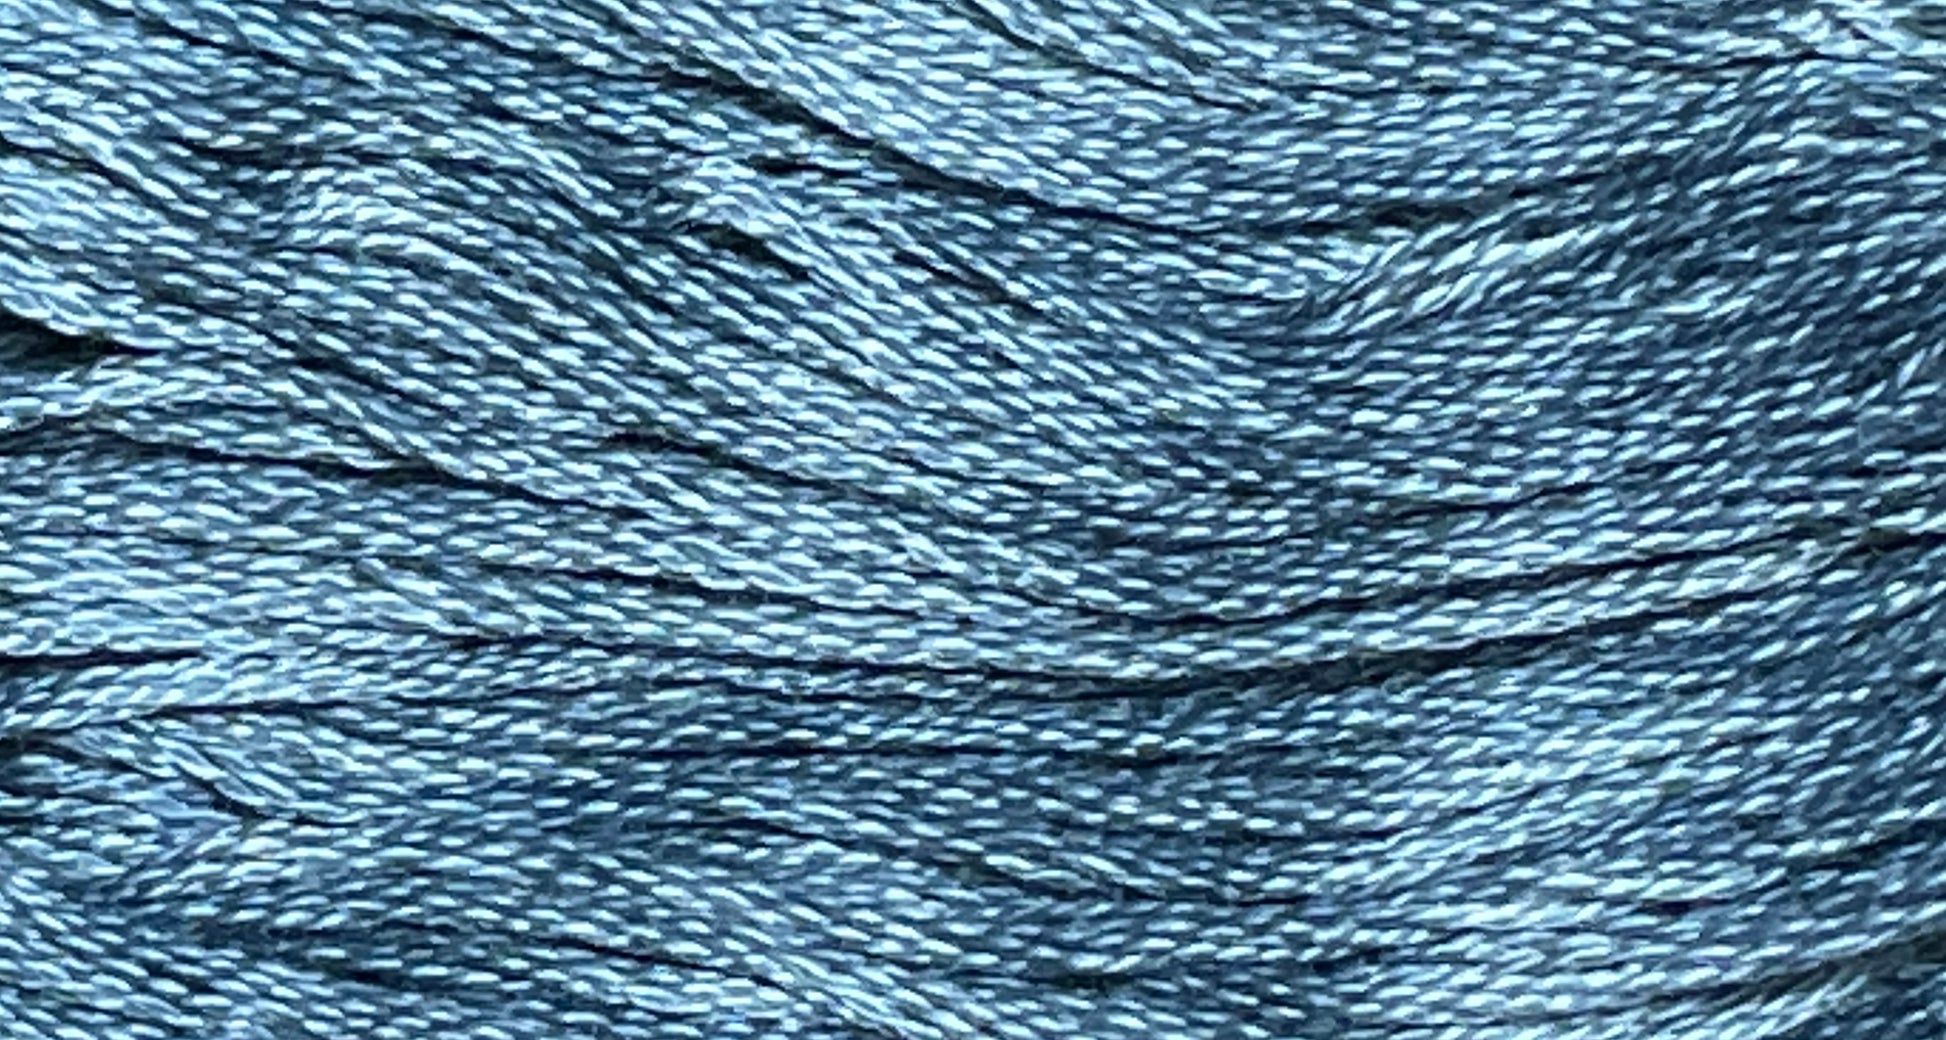 Dungarees - Gentle Arts Cotton Thread - 5 yard Skein - Cross Stitch Floss, Thread & Floss, Thread & Floss, The Crafty Grimalkin - A Cross Stitch Store